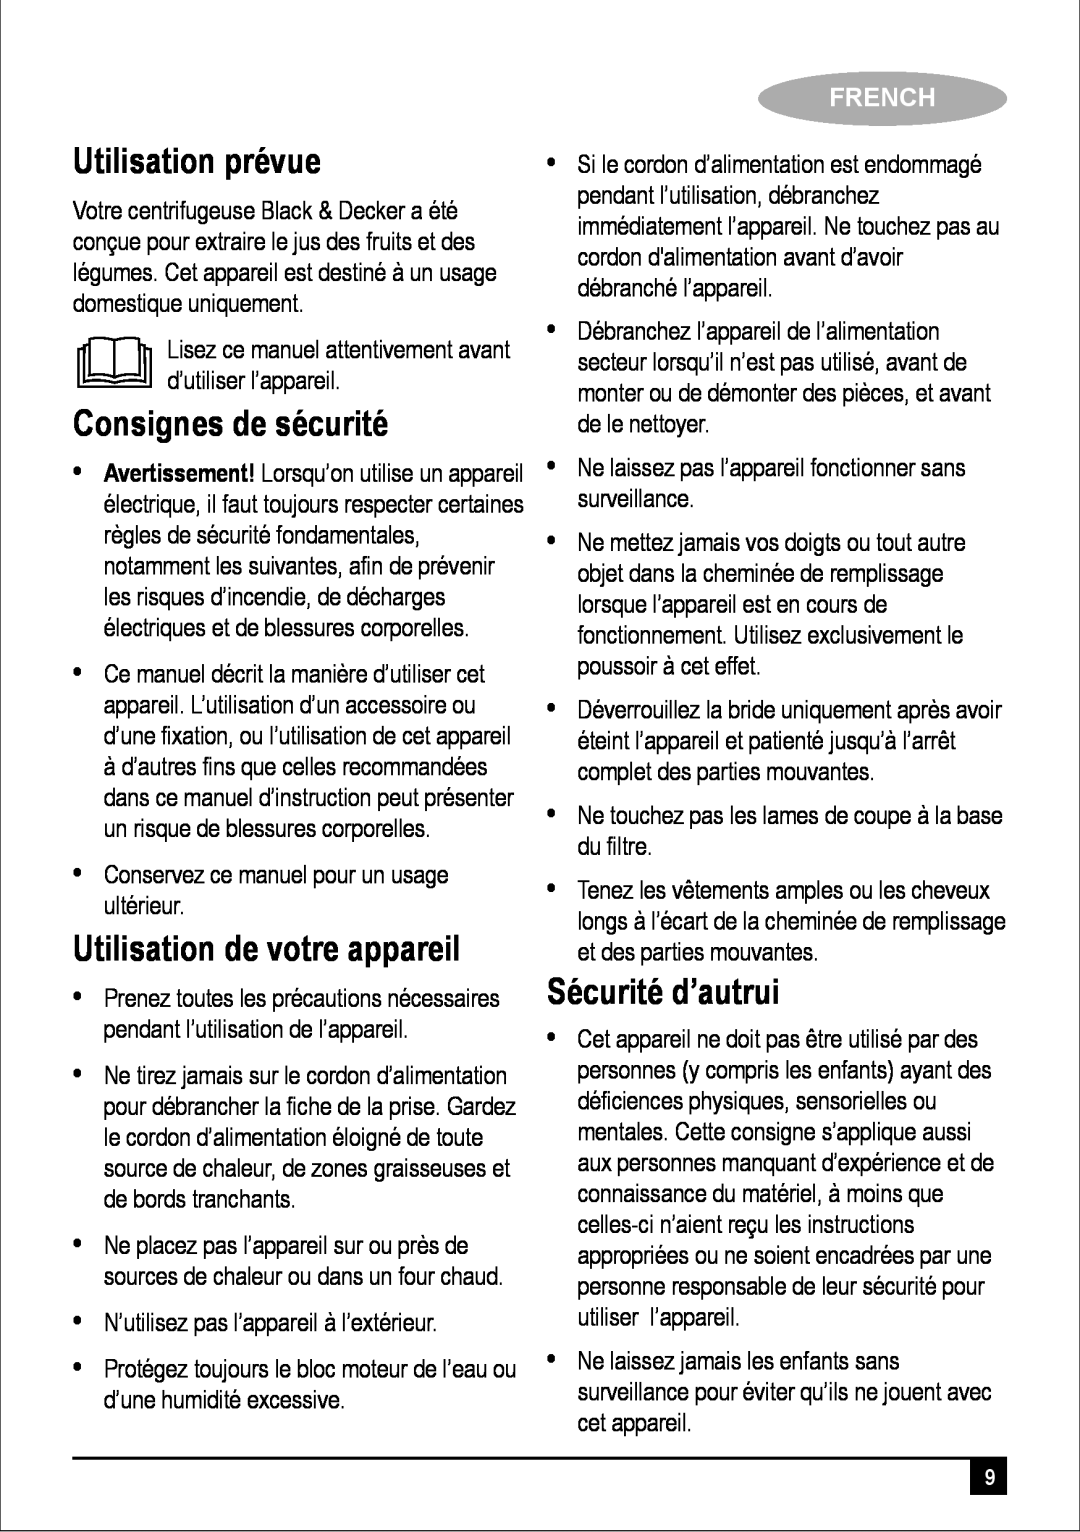 Black & Decker PRJE650 Utilisation prévue, Consignes de sécurité, Utilisation de votre appareil, Sécurité d’autrui, French 